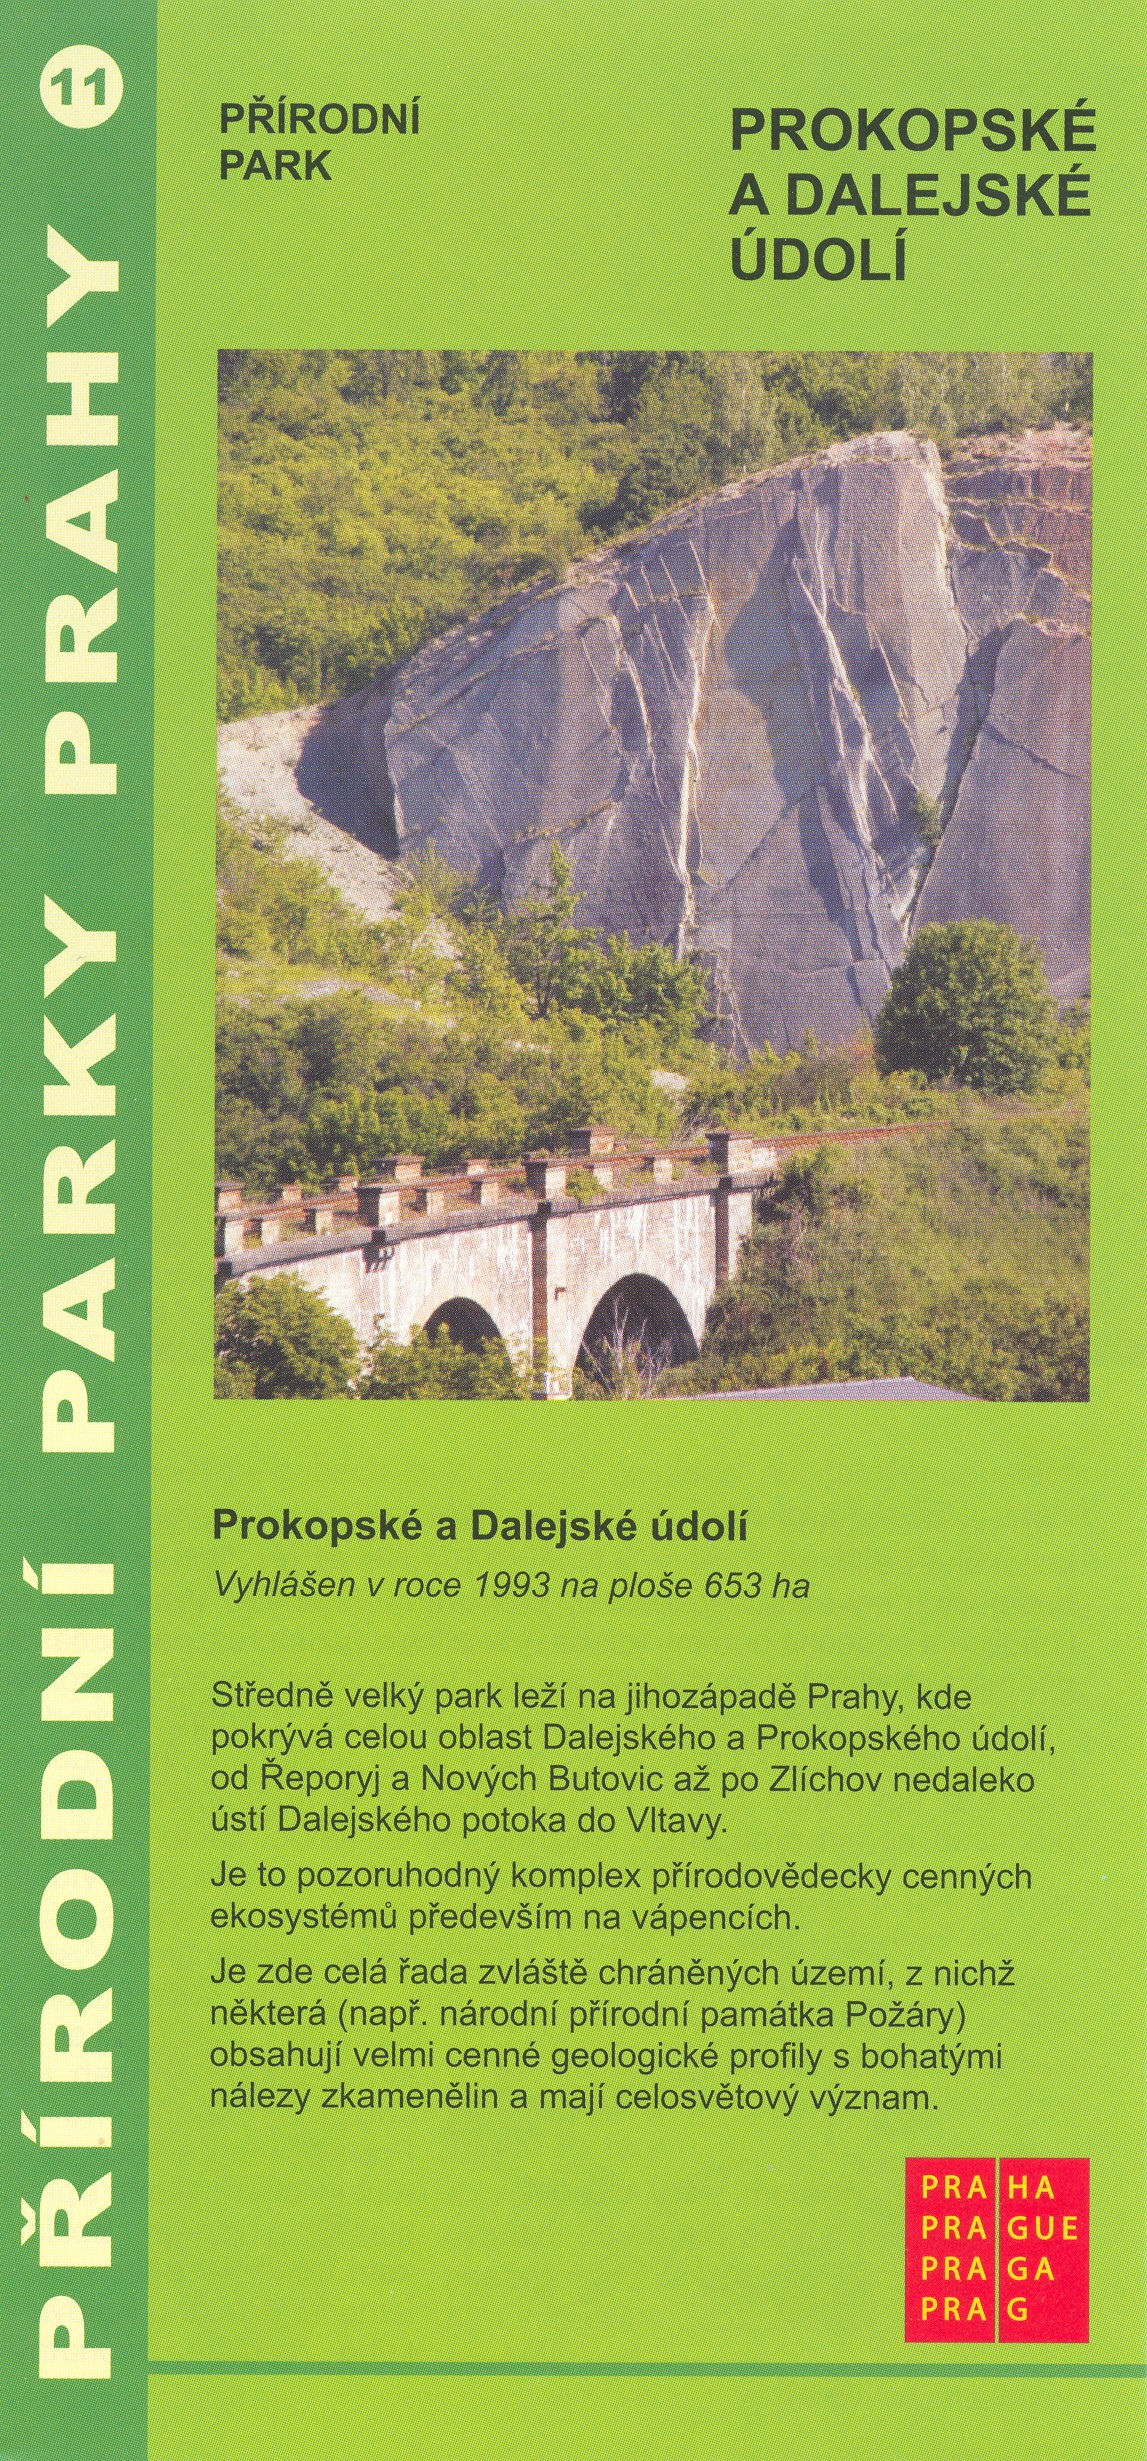 informační materiál Přírodní parky Prahy, č.11 - Prokopské a Dalejské údolí